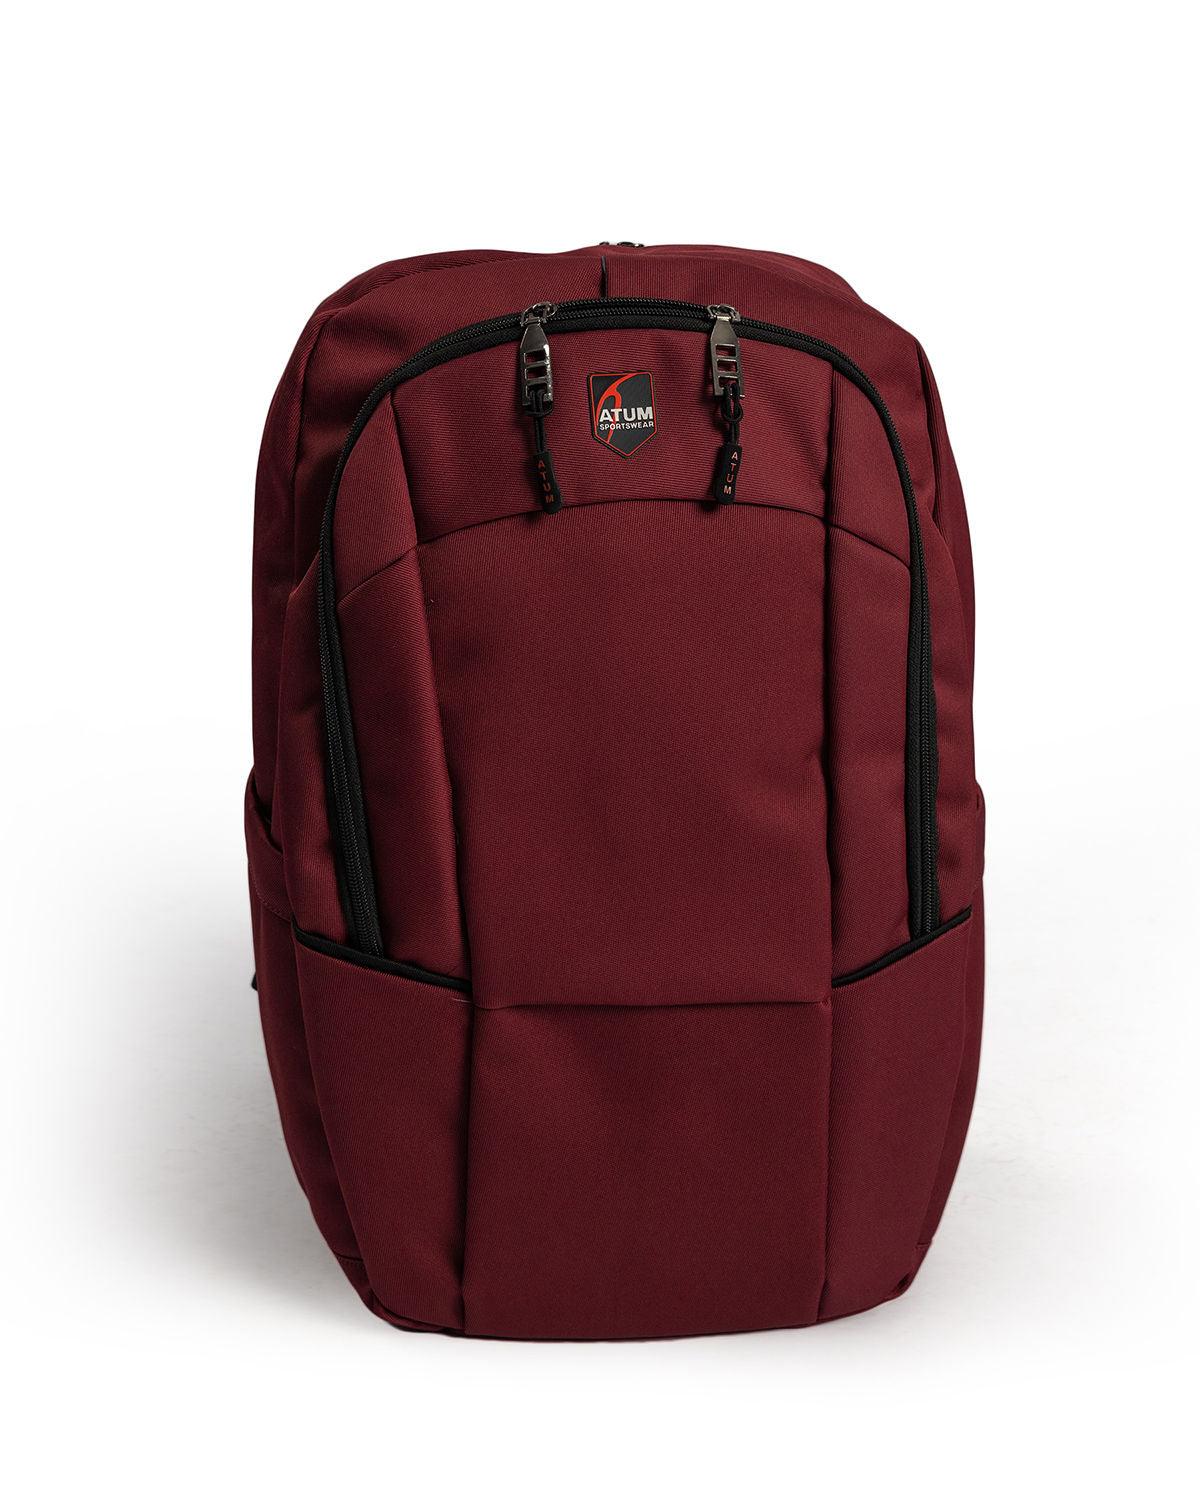 Photo by ð—”ð—§ð—¨ð— SPORTSWEAR Â® on December 26, 2022. May be a red optimum backpack.